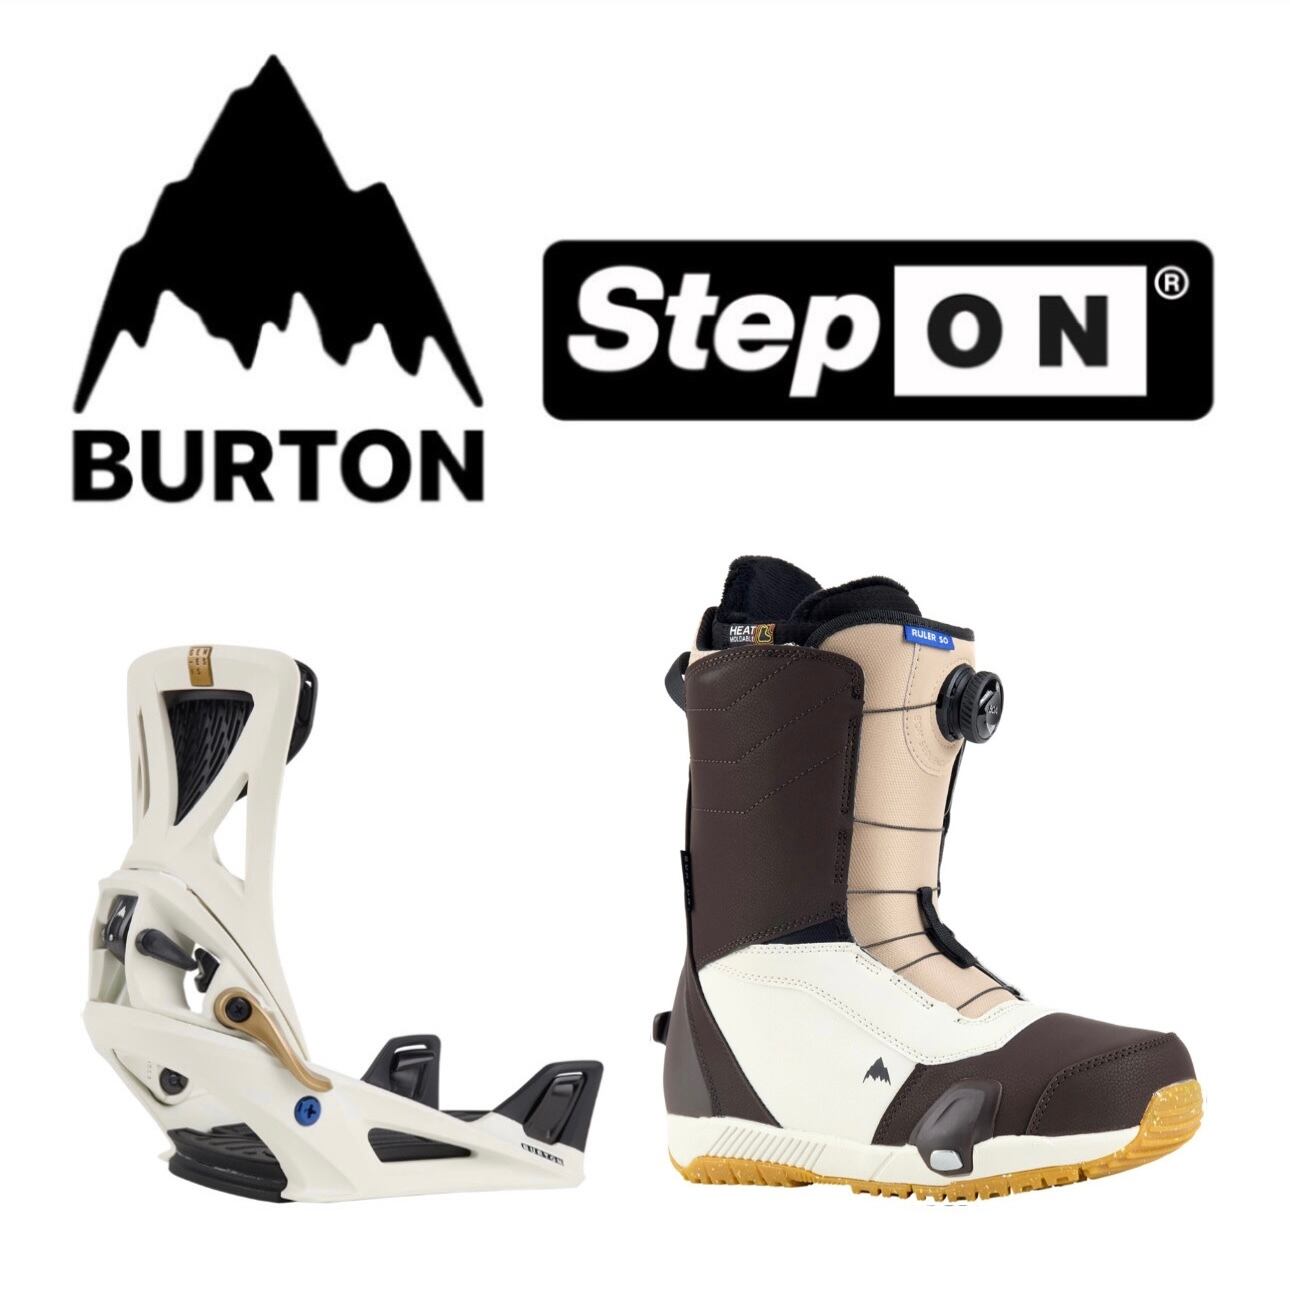 BURTON フルセット スノーボード ビンディング ブーツ ボードバック